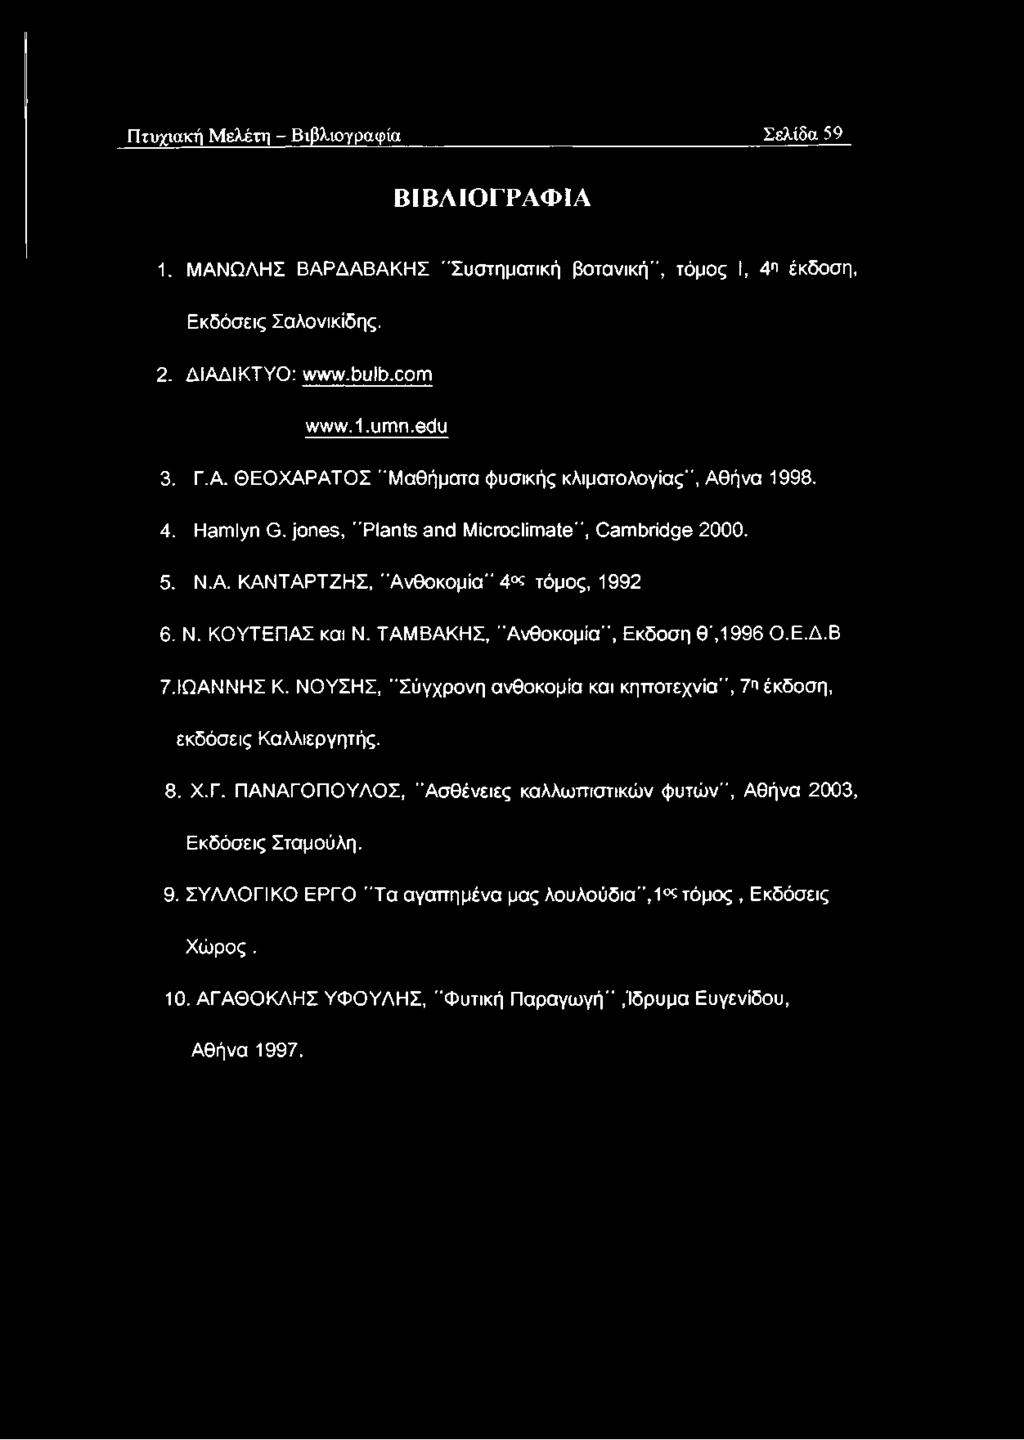 ΤΑΜΒΑΚΗΣ, "Ανθοκομία", Εκδοση θ ',1996 Ο.Ε.Δ.Β 7. ΙΩΑΝΝΗΣ Κ. ΝΟΥΣΗΣ, "Σύγχρονη ανθοκομία και κηττοτεχνία", 7π έκδοση, εκδόσεις Καλλιεργητής. 8. Χ.Γ.